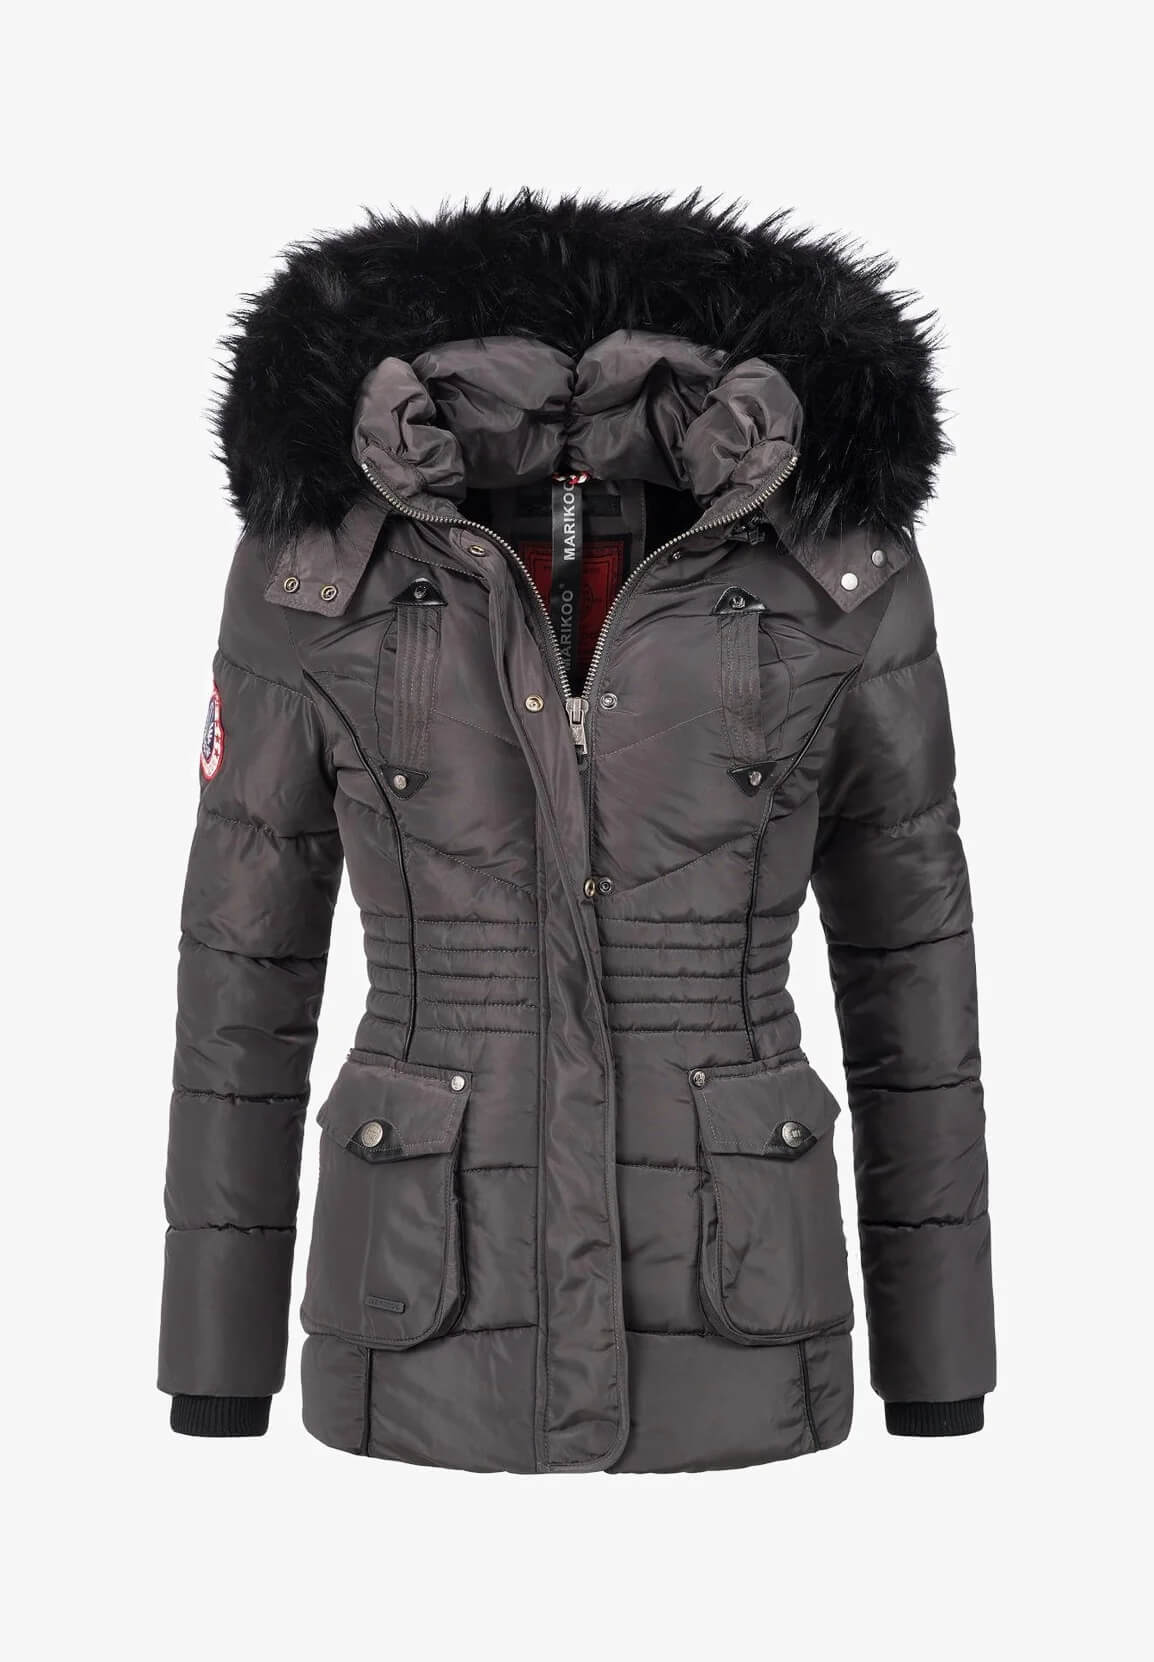 Trendy women's winter jacket A